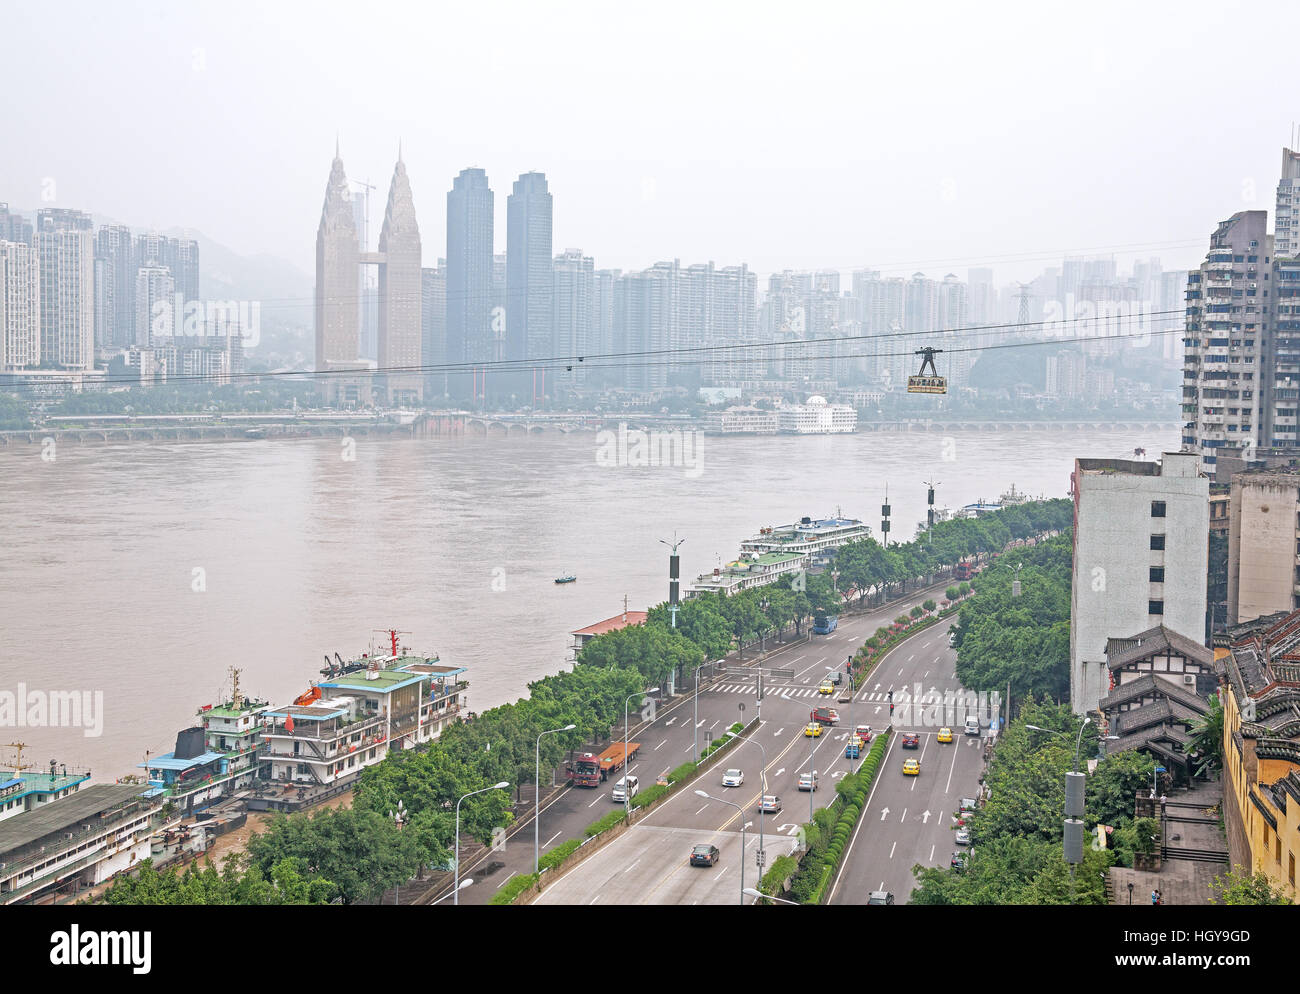 Le centre-ville de Chongqing. Chongqing est la plus grande ville de Chine. Banque D'Images